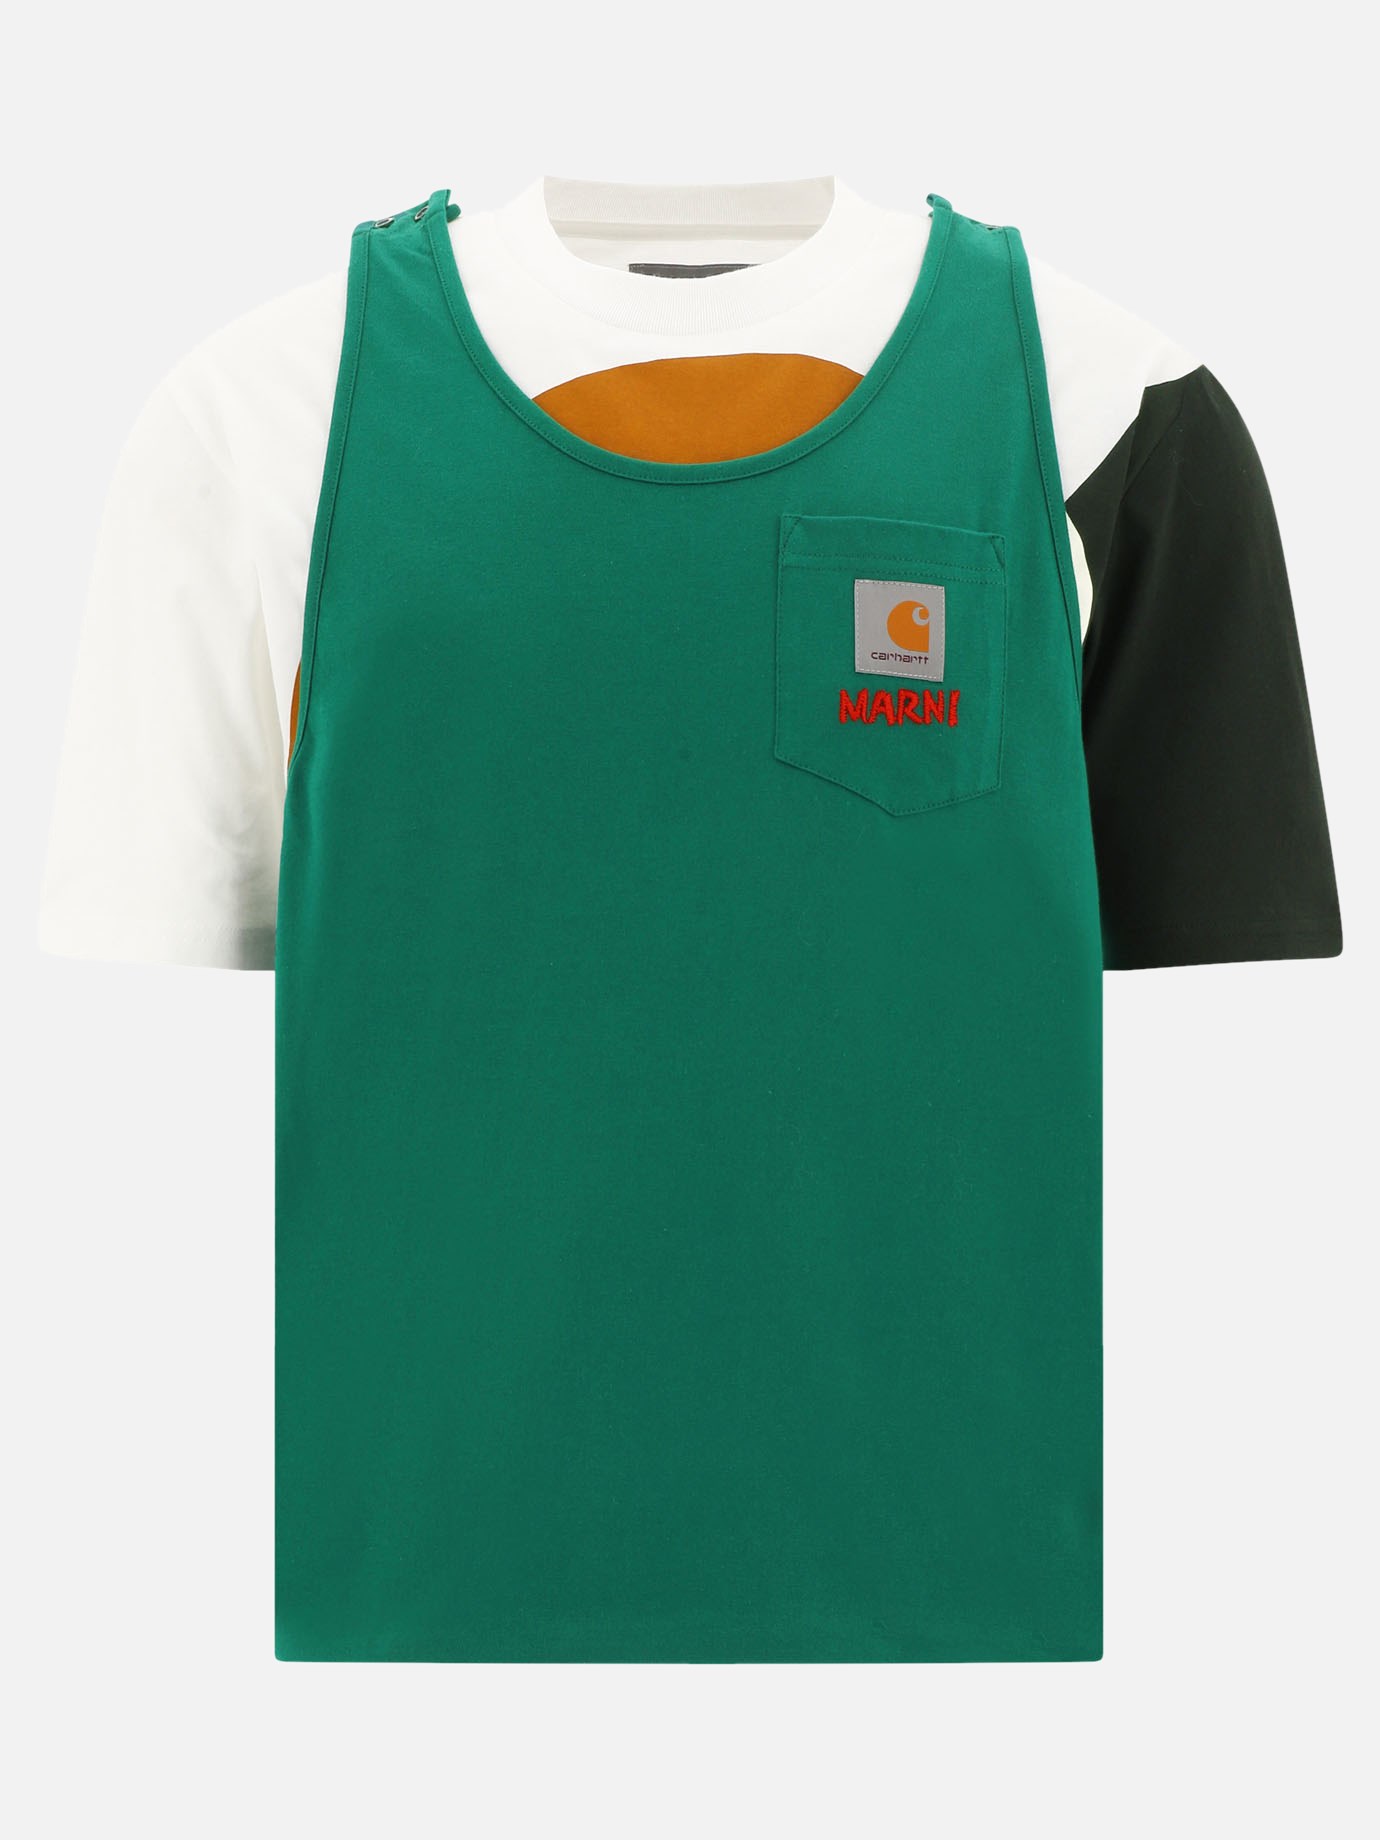 T-shirt con taschino  Marni x Carhartt by Marni - 0